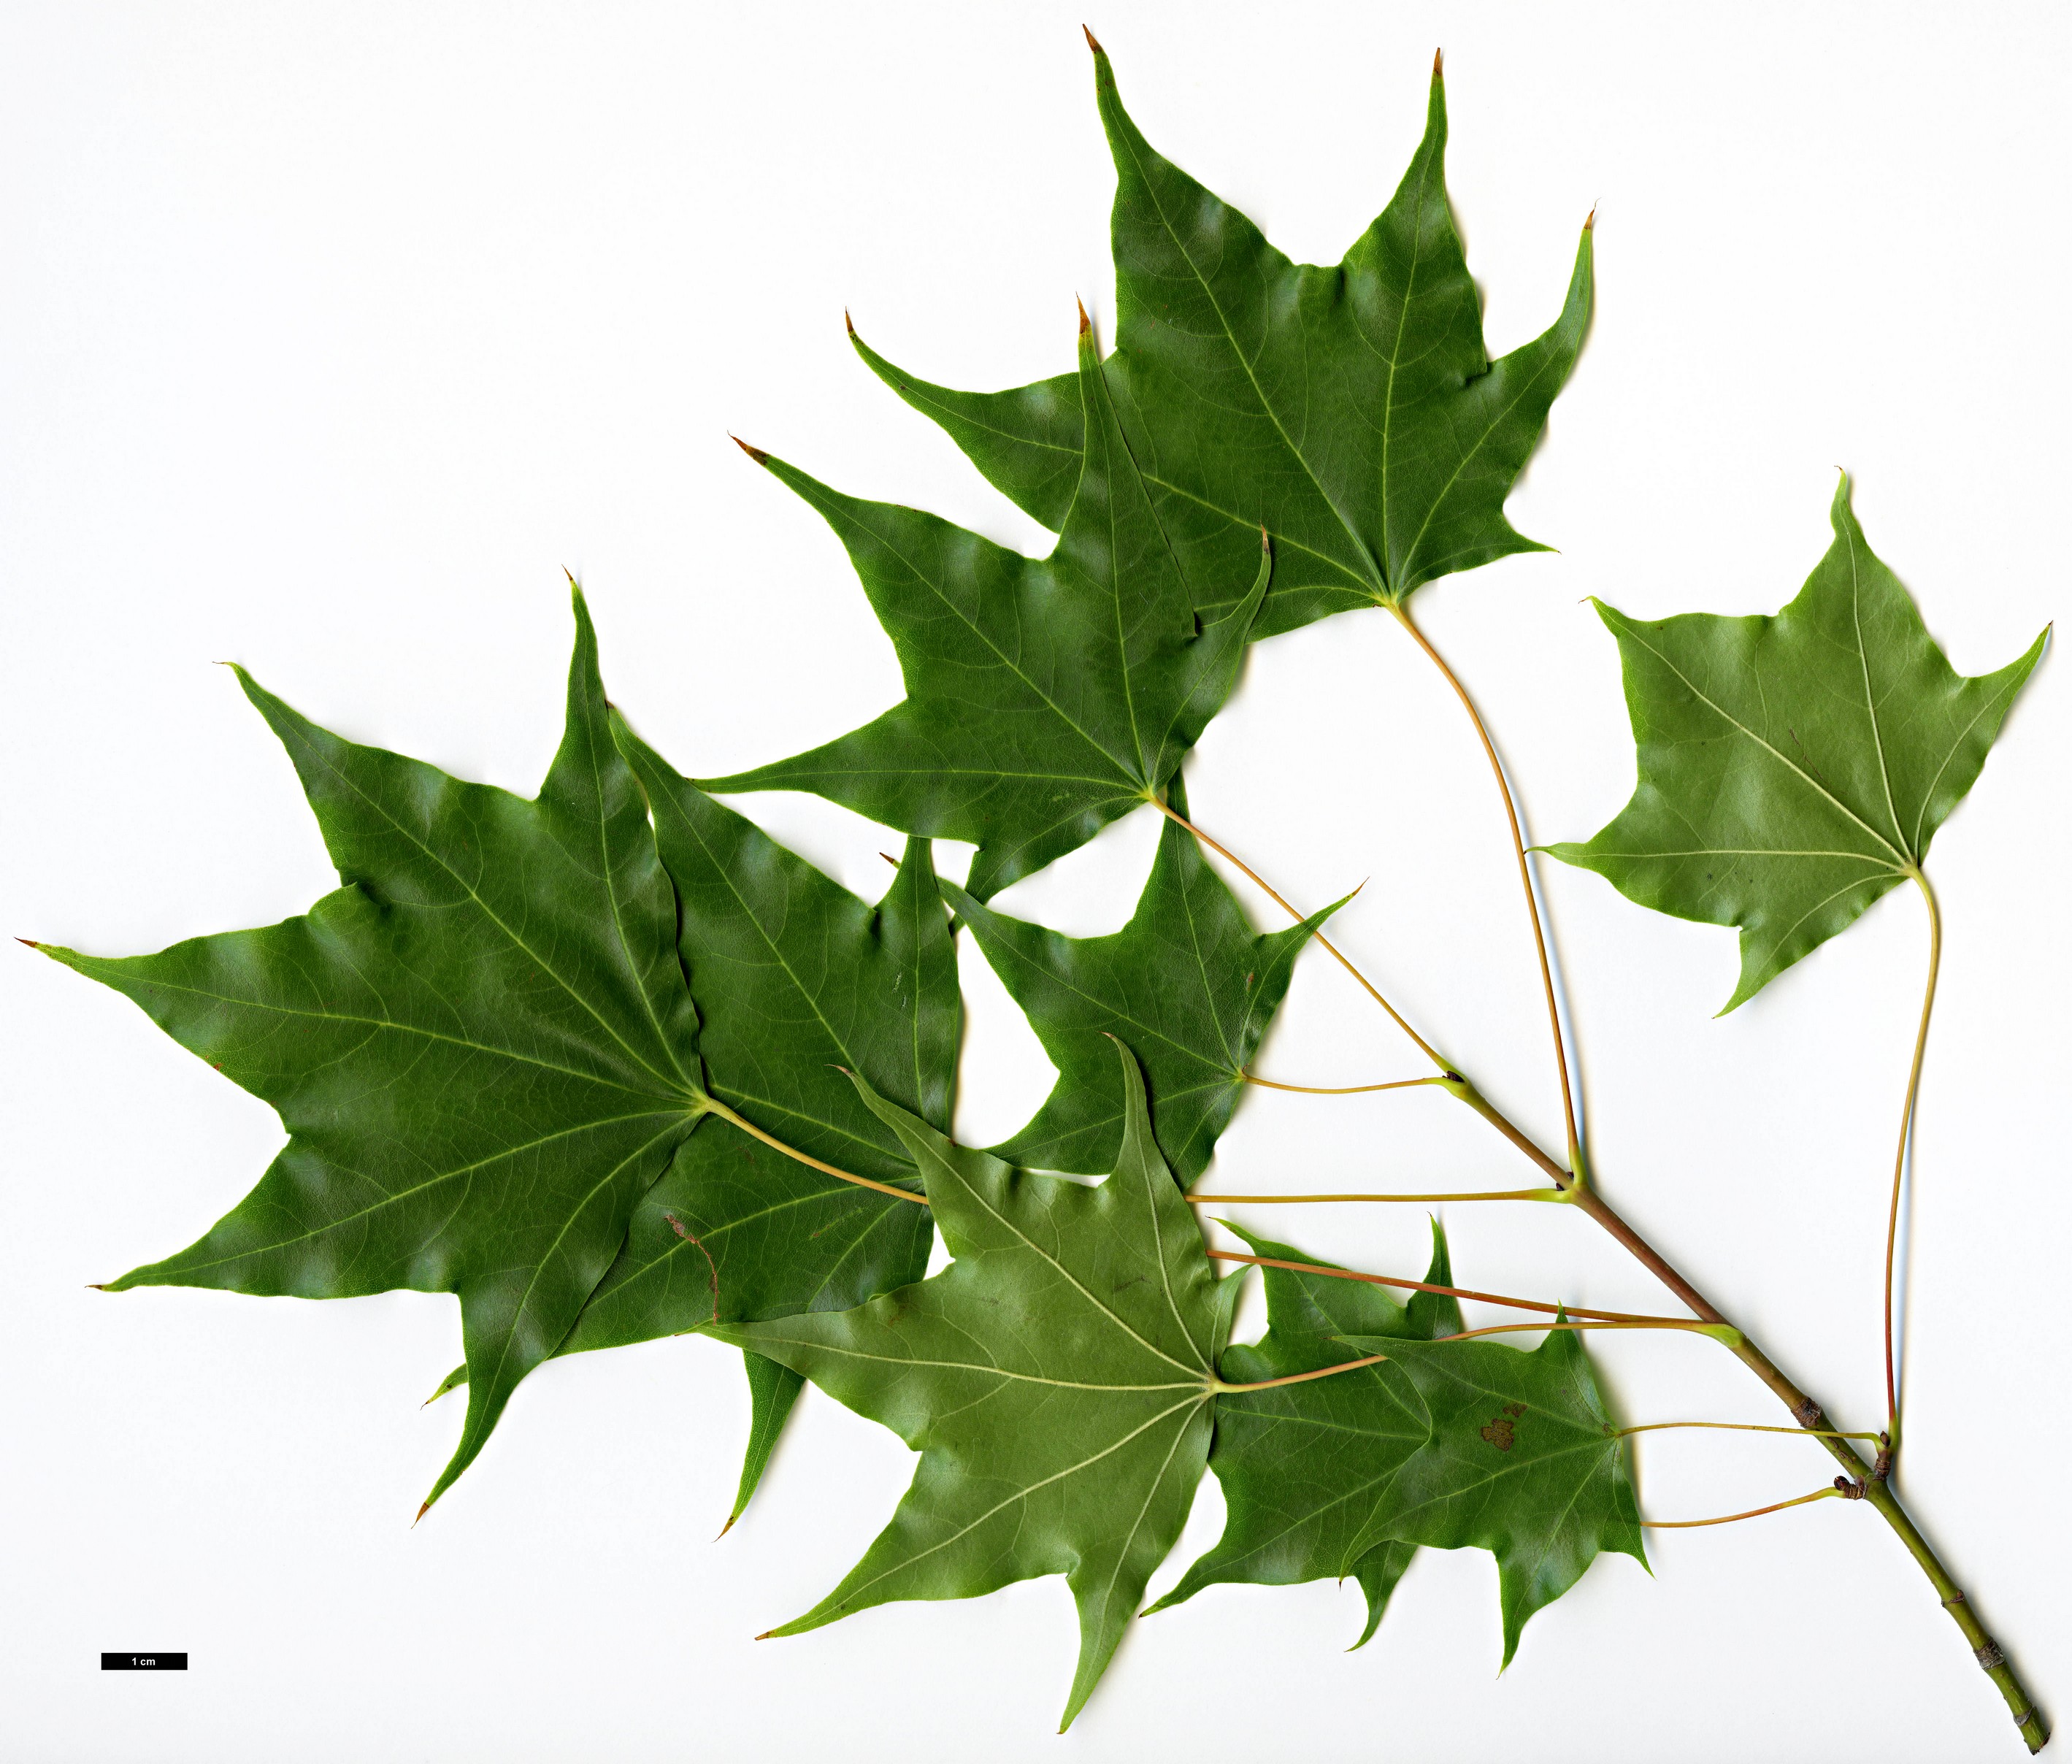 High resolution image: Family: Sapindaceae - Genus: Acer - Taxon: cappadocicum - SpeciesSub: var. sinicum